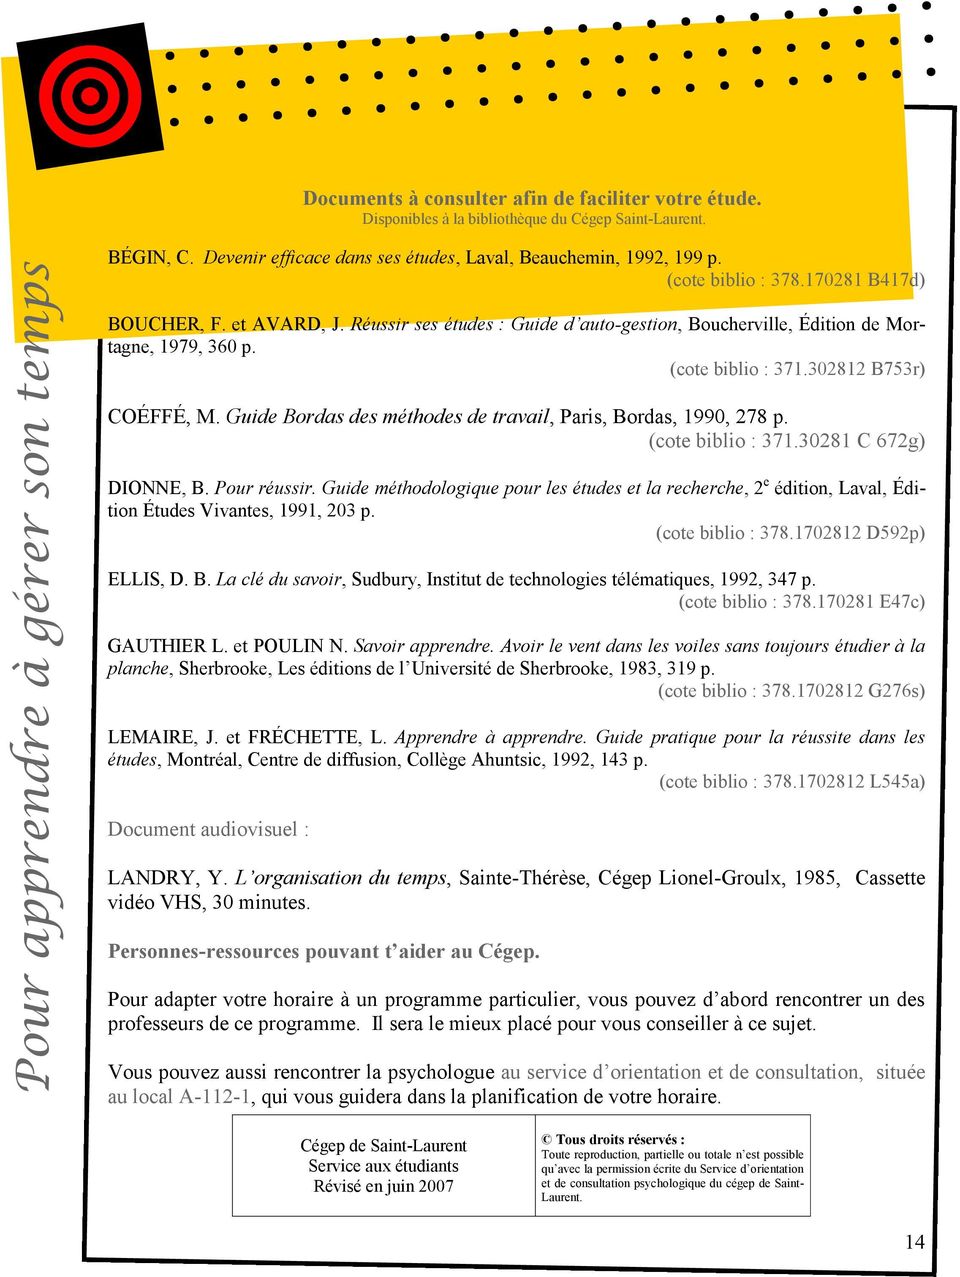 Guide Bordas des méthodes de travail, Paris, Bordas, 1990, 278 p. (cote biblio : 371.30281 C 672g) DIONNE, B. Pour réussir.